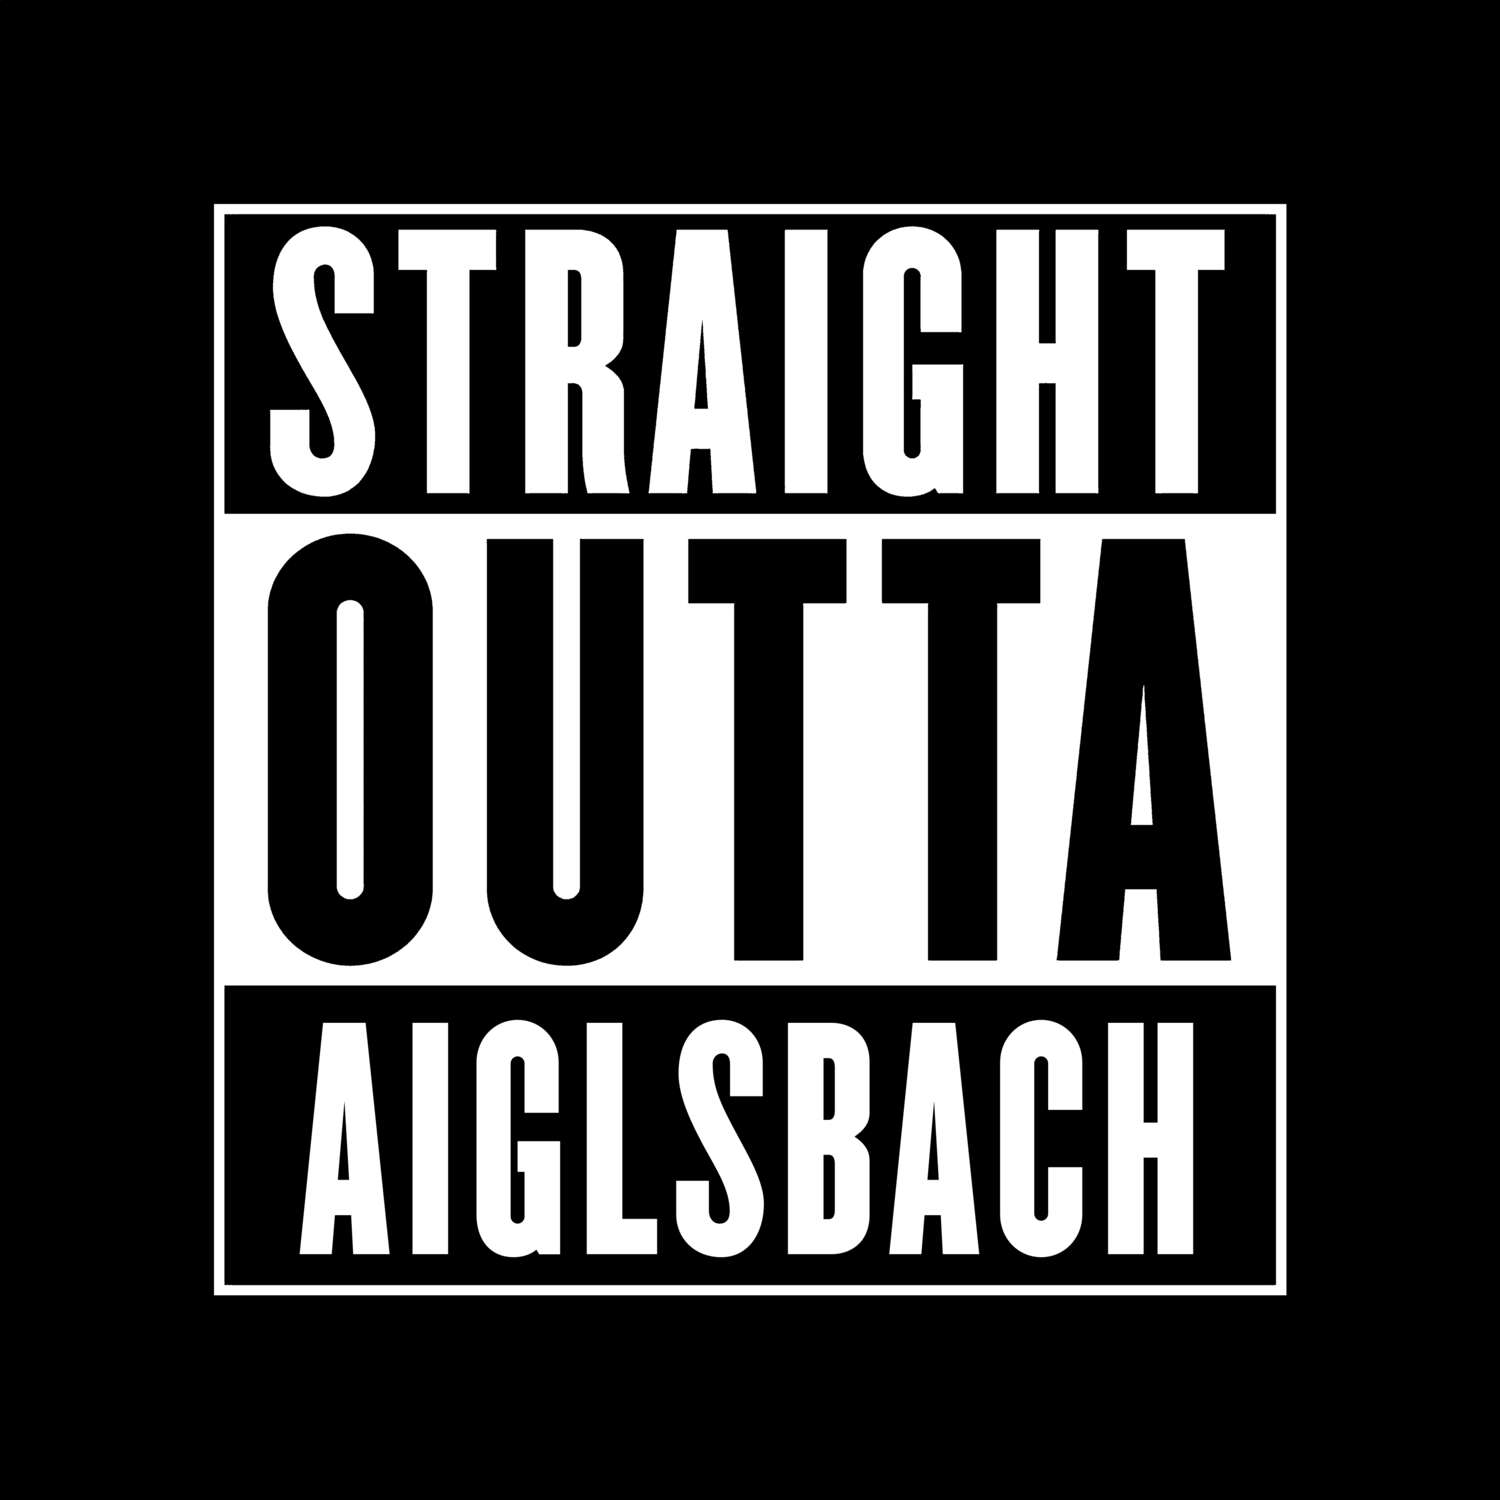 Aiglsbach T-Shirt »Straight Outta«